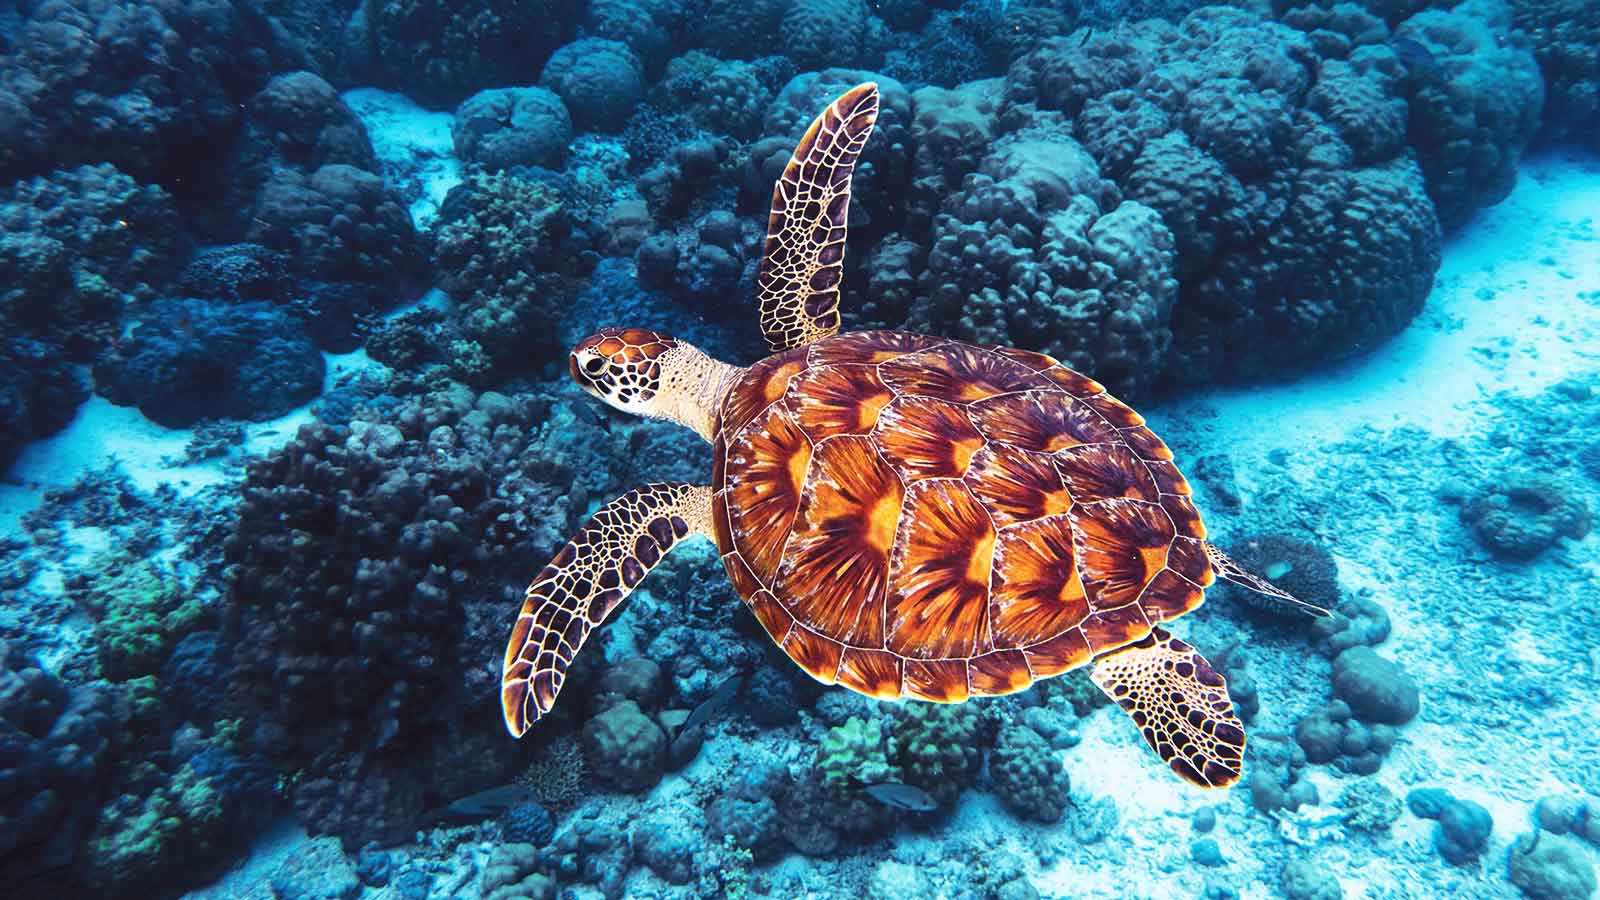 An Endangered Hawksbill Turtle swimming in open ocean